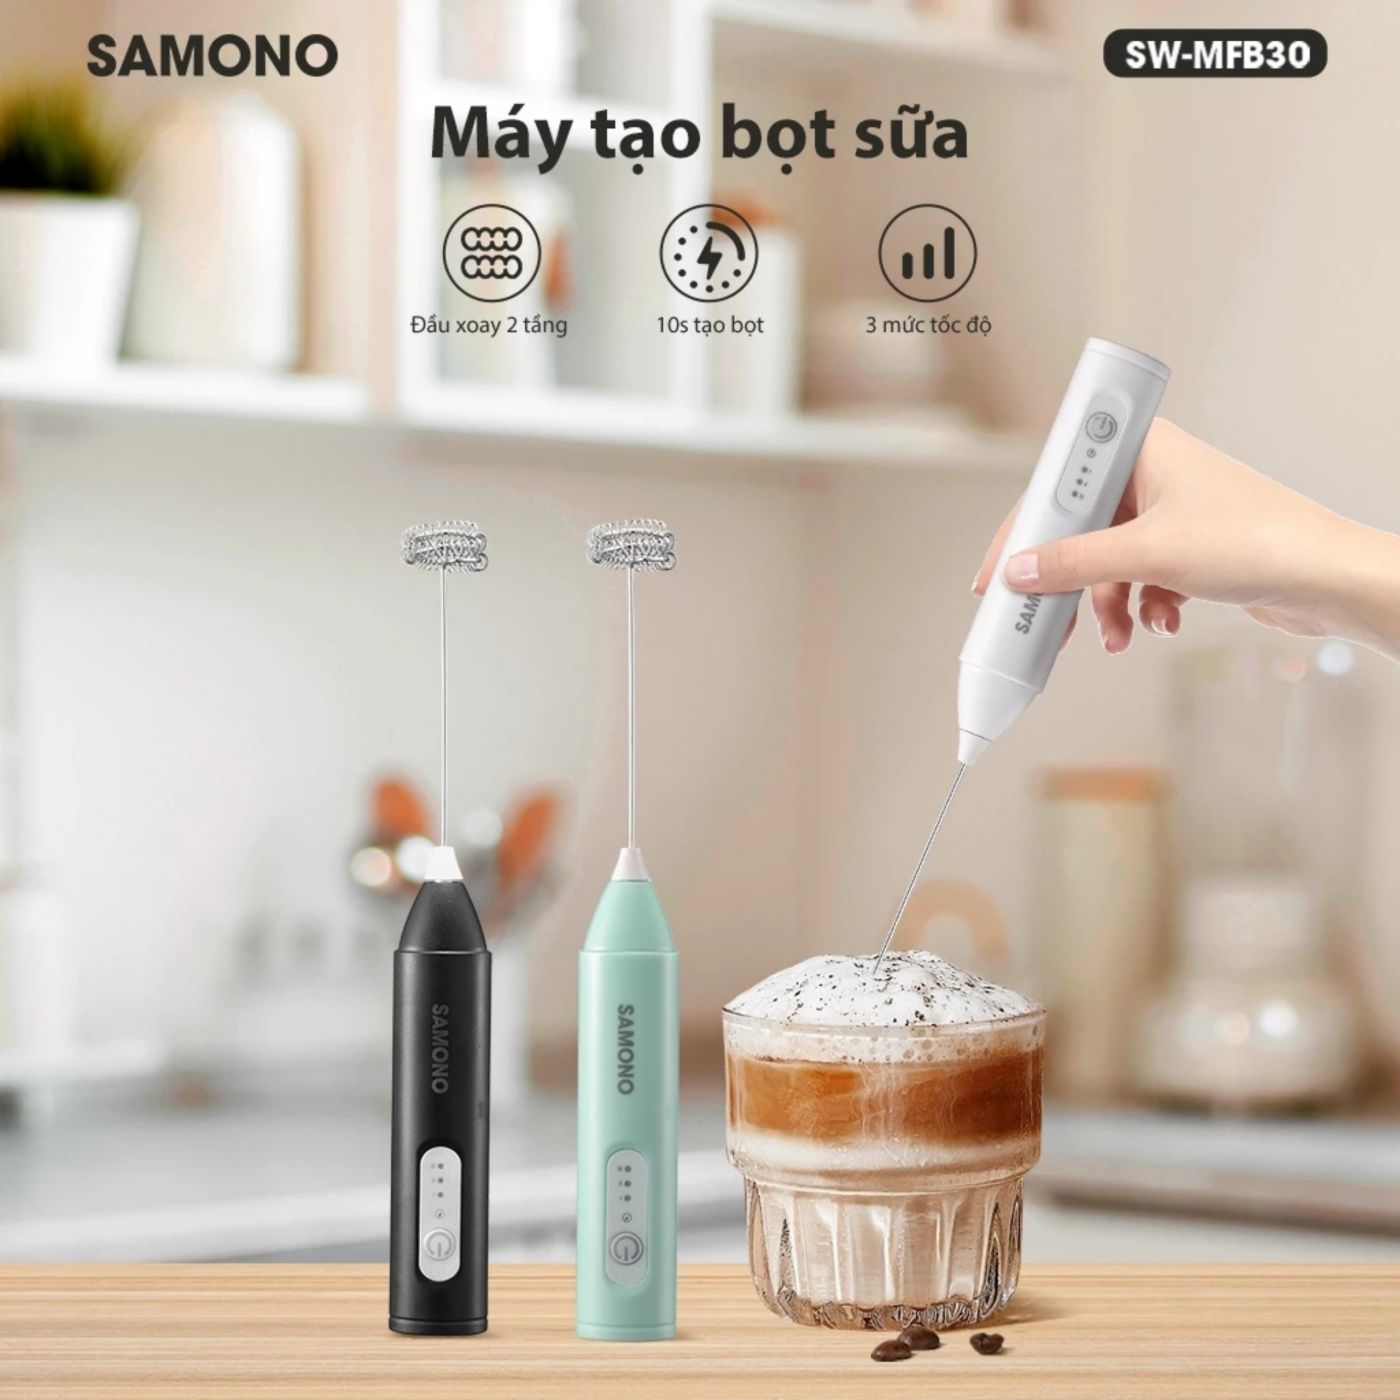 Máy tạo bọt cafe Samono SW-MFB30 xanh mint, 3 tốc độ, 7W cầm tay không dây, hỗ trợ sạc pin tiện lợi